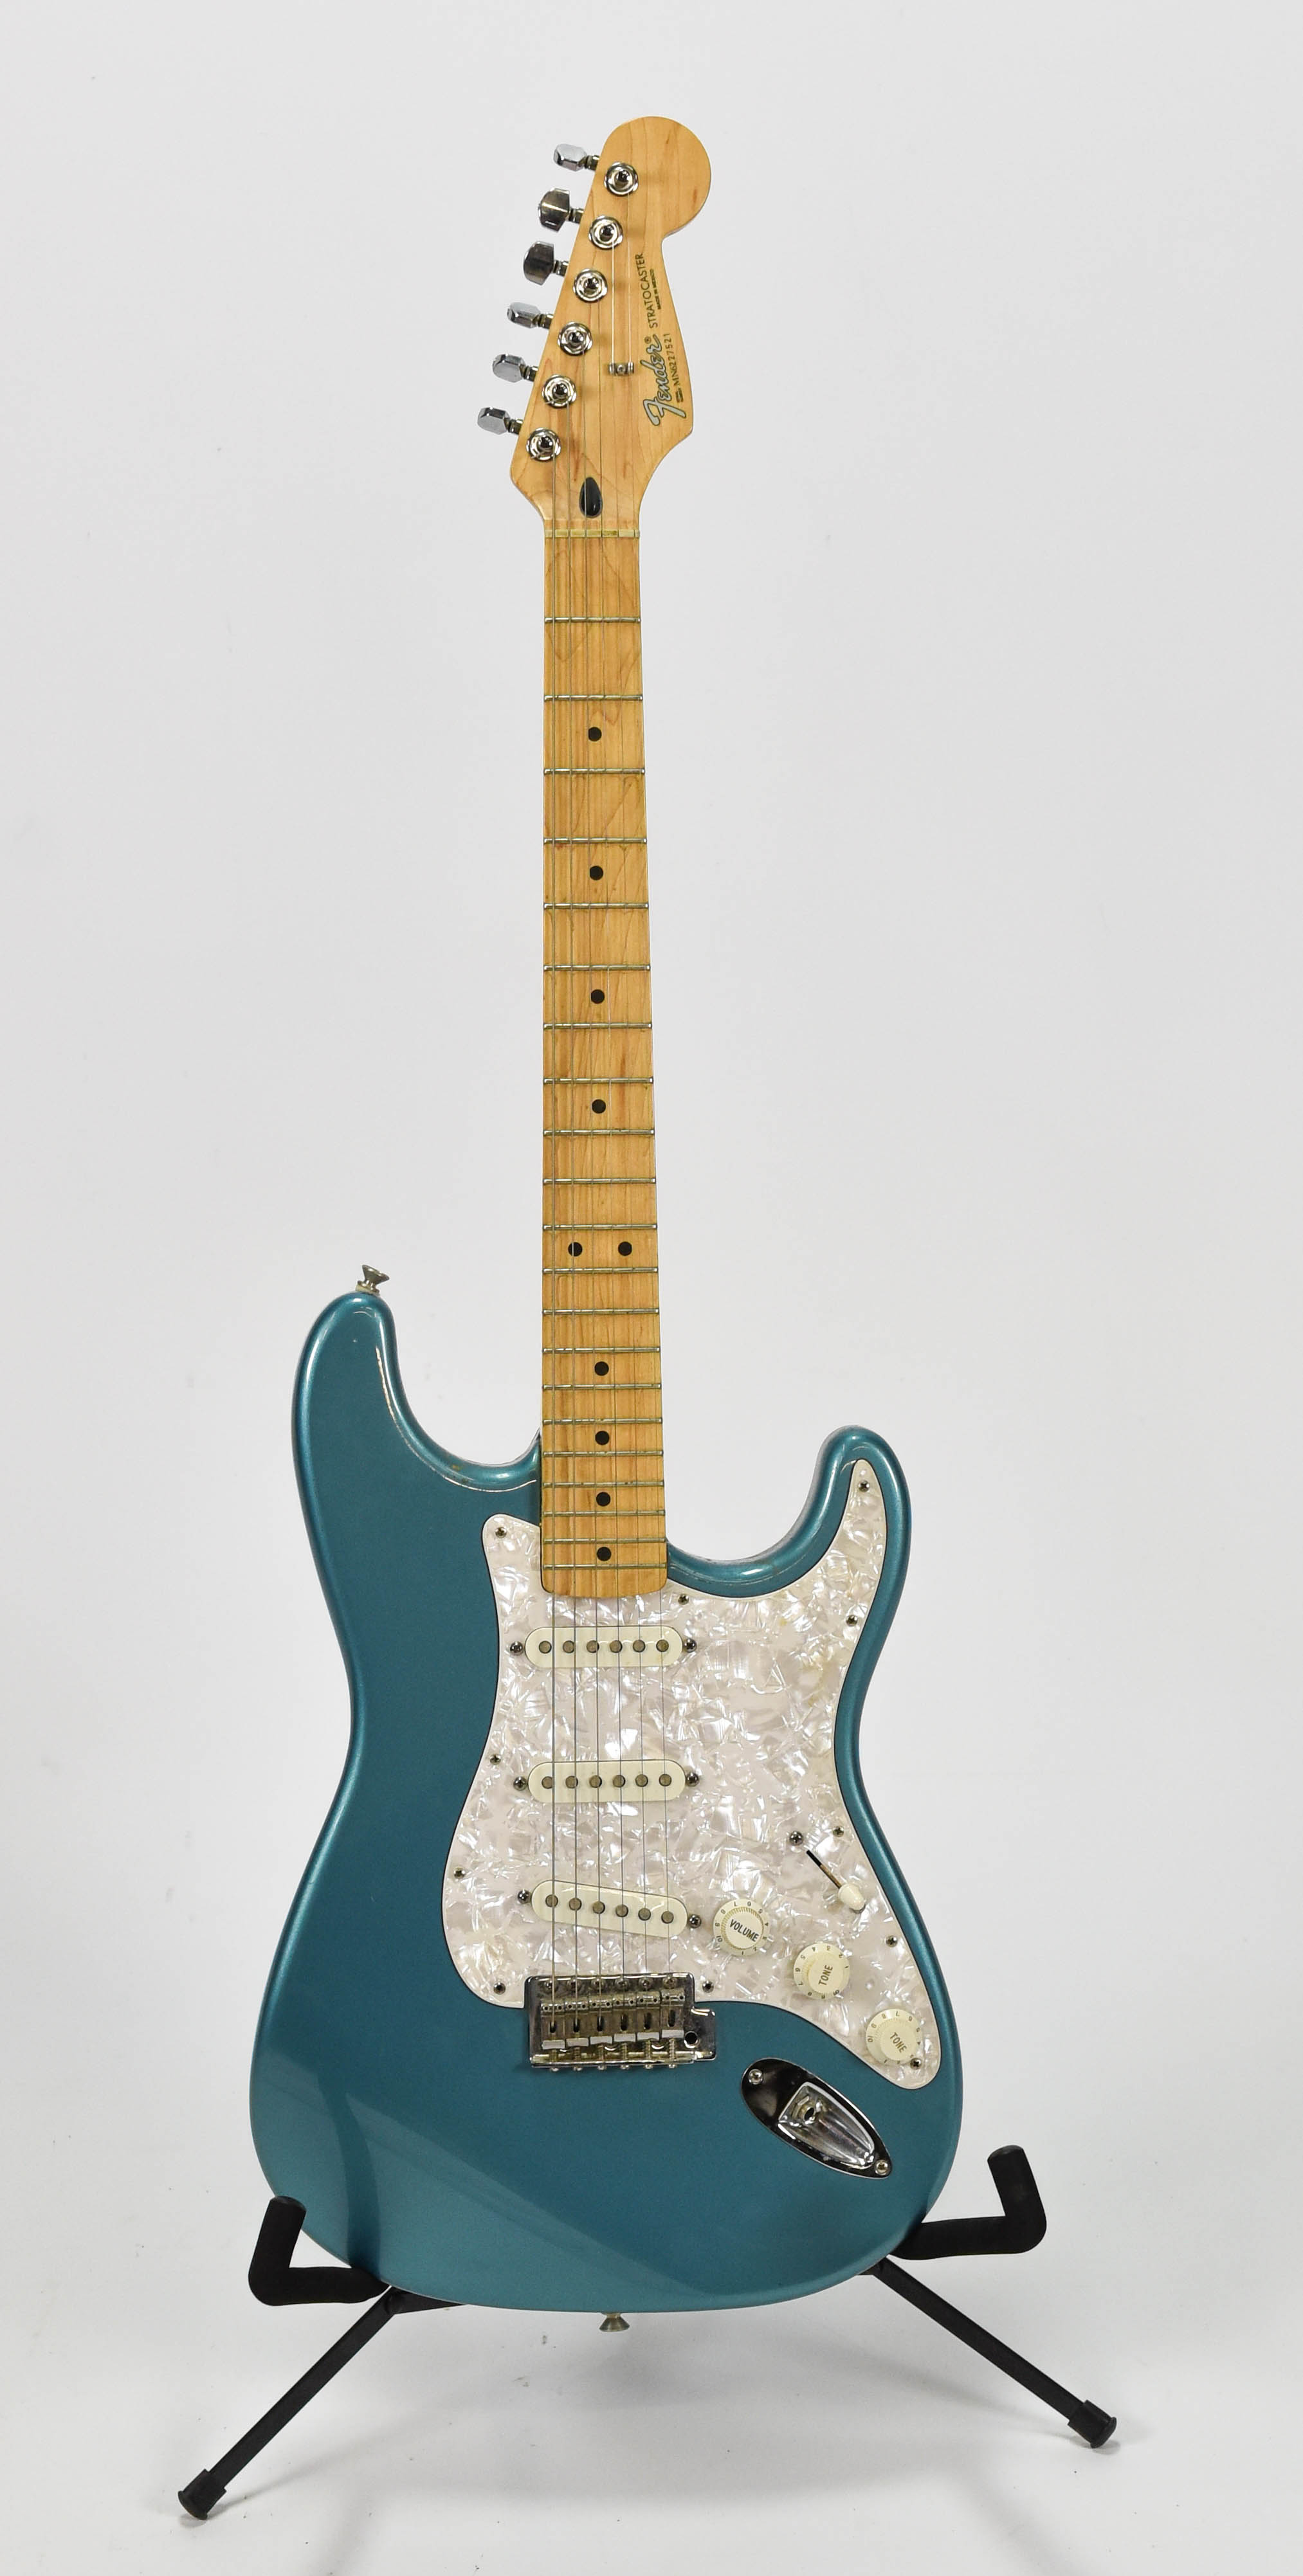 Teal Blue Fender Stratocaster Electric Guitar